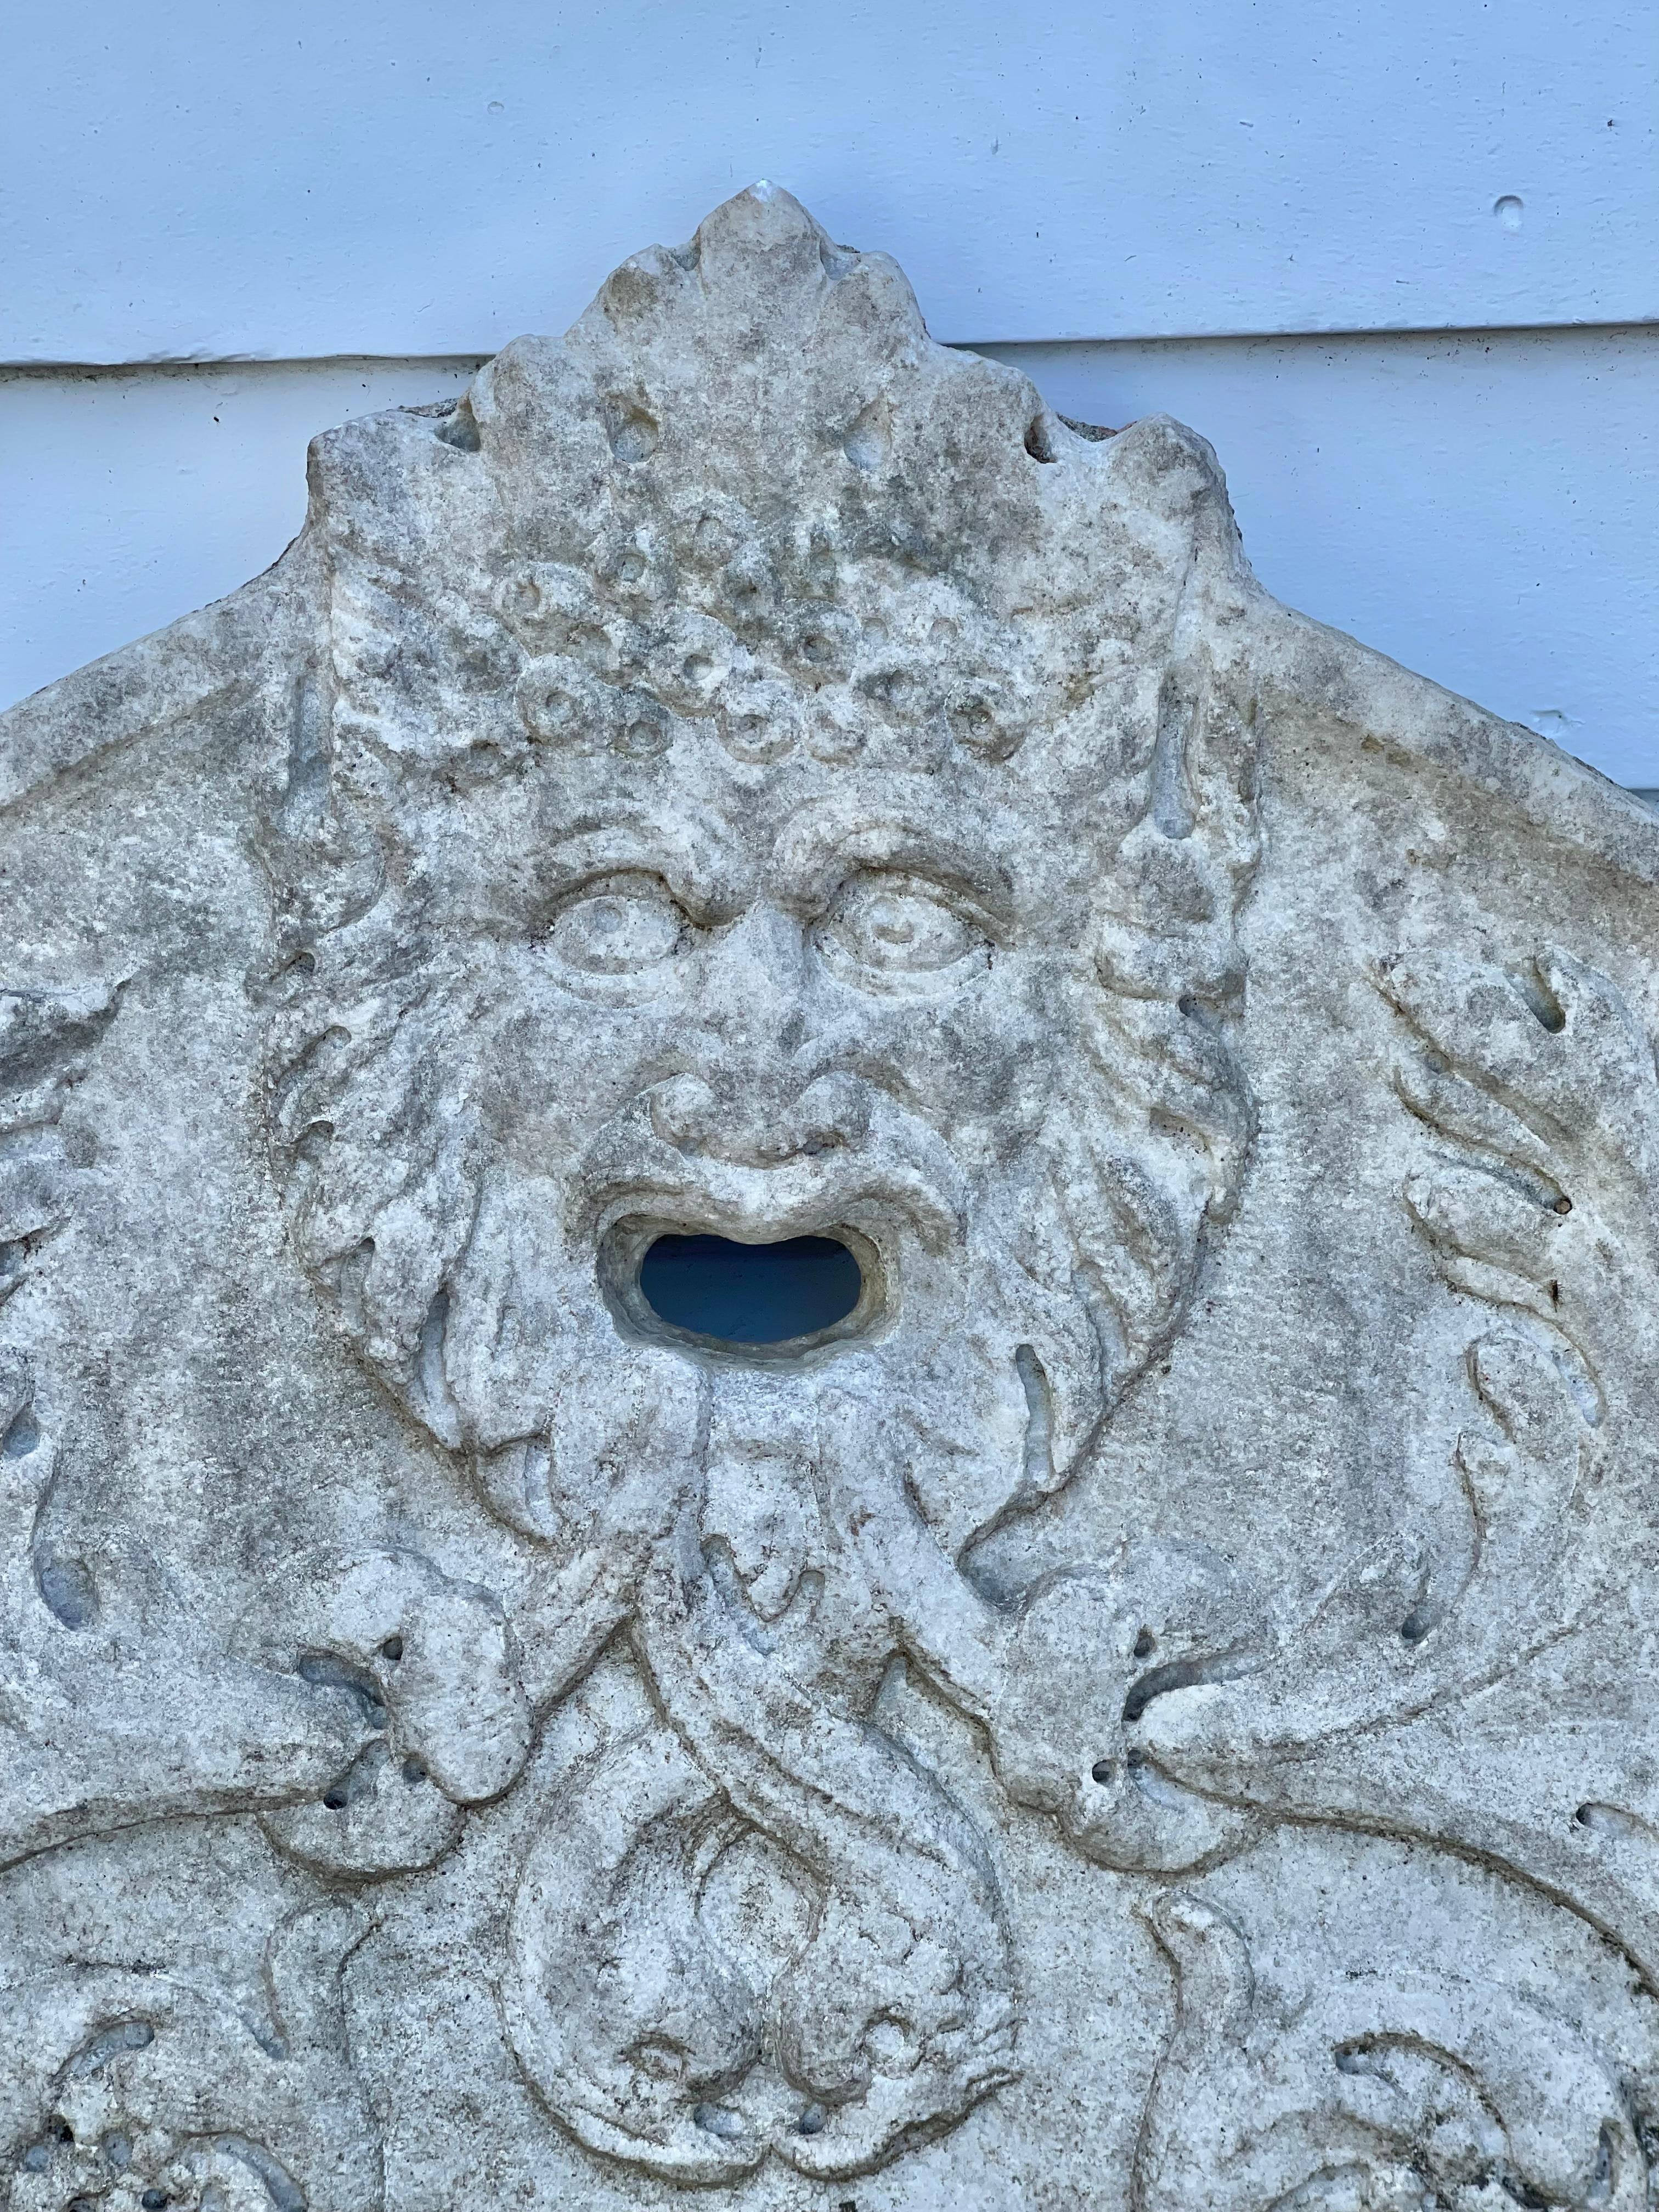 Geschnitzte Brunnenplatte aus Marmor mit italienischem, archaischem Gesicht.

Provenienz: Aus gutem Grund, Astor's Ferncliff, Rhinebeck, New York.